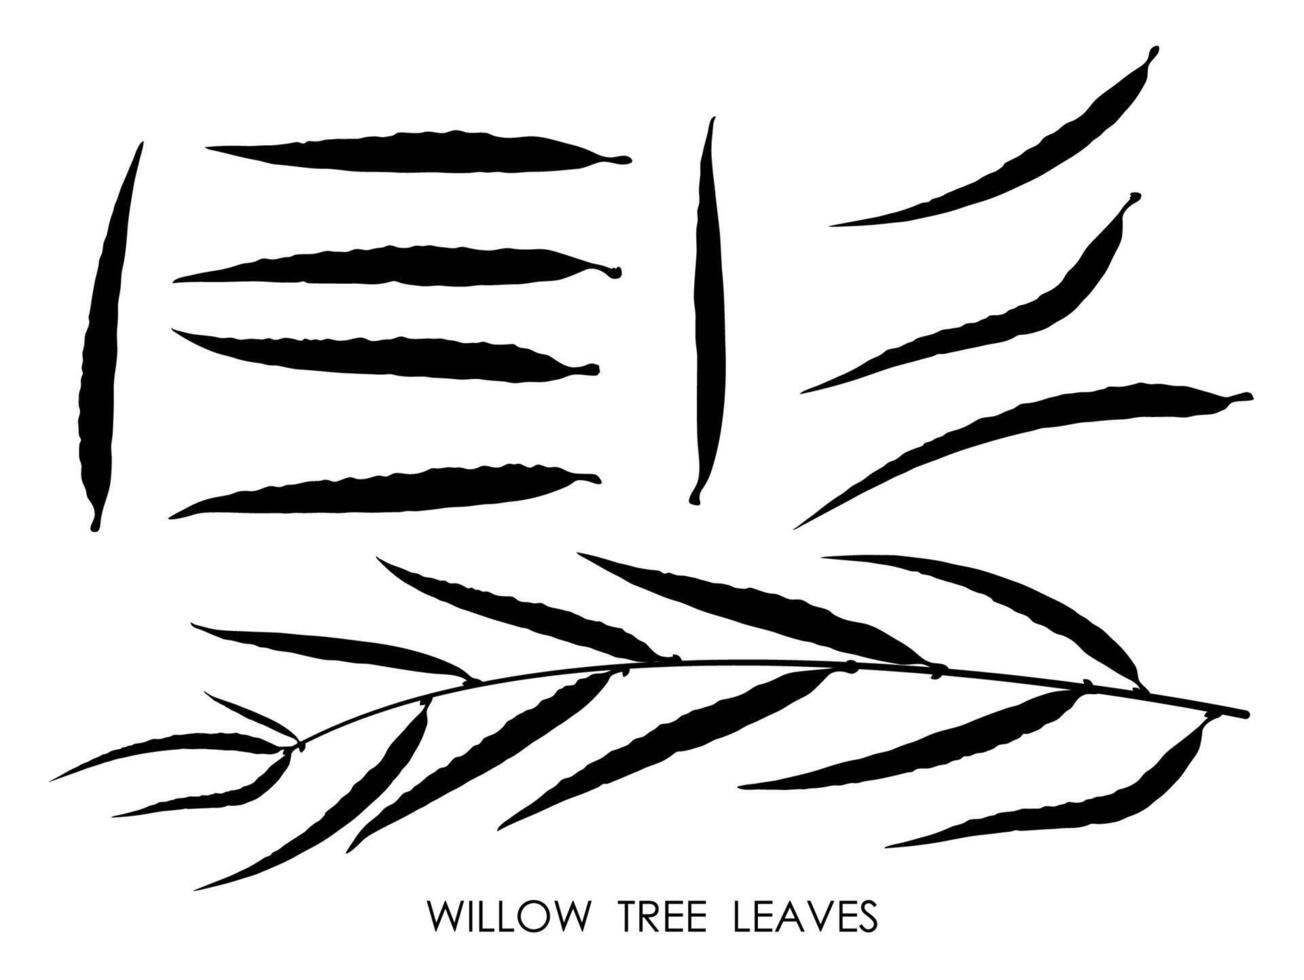 negro siluetas de sauce árbol hojas aislado en blanco. otoño caído hojas de sauce árbol. vector